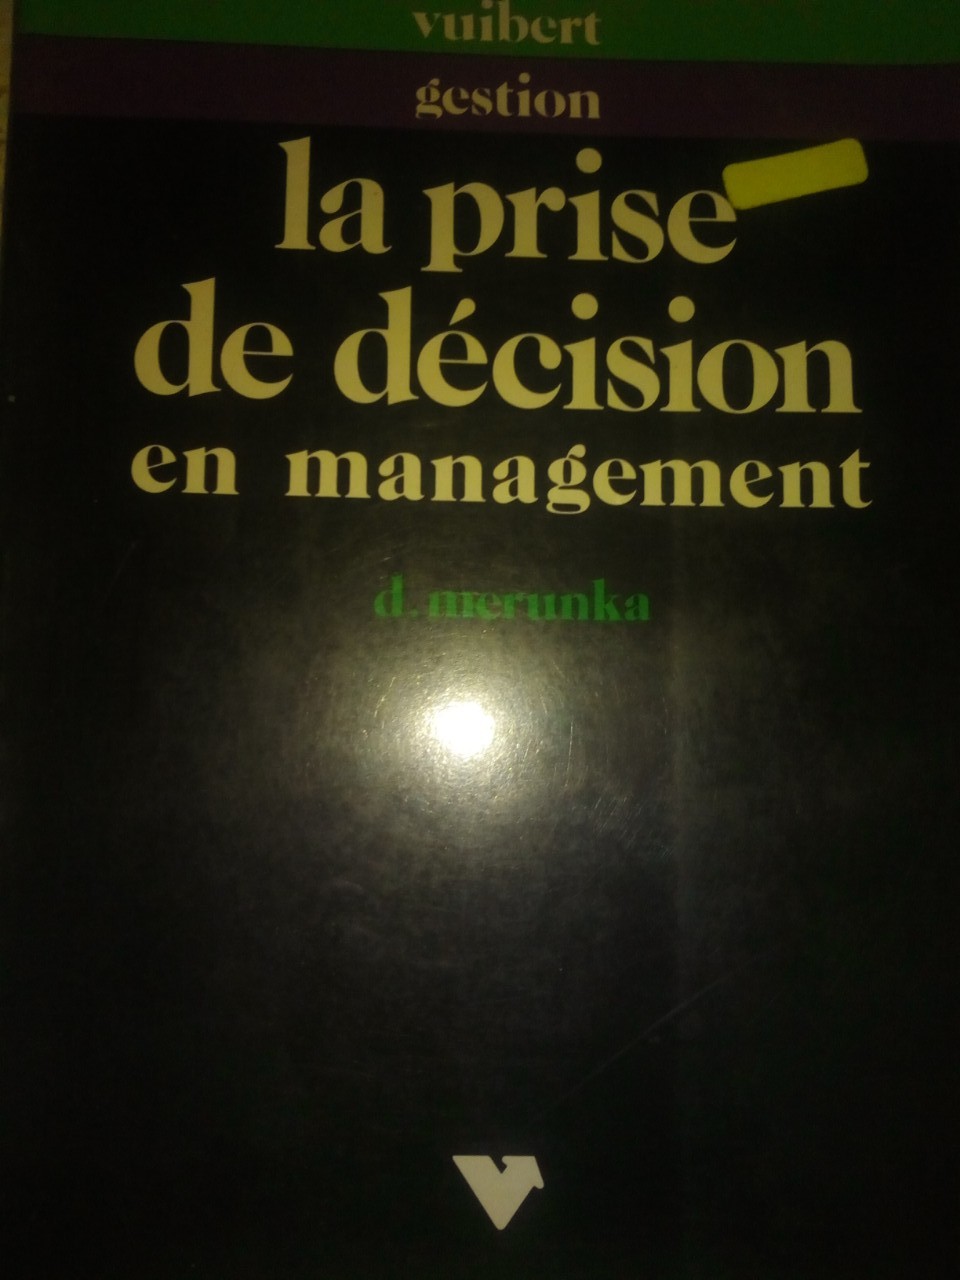 La prise de decision en management